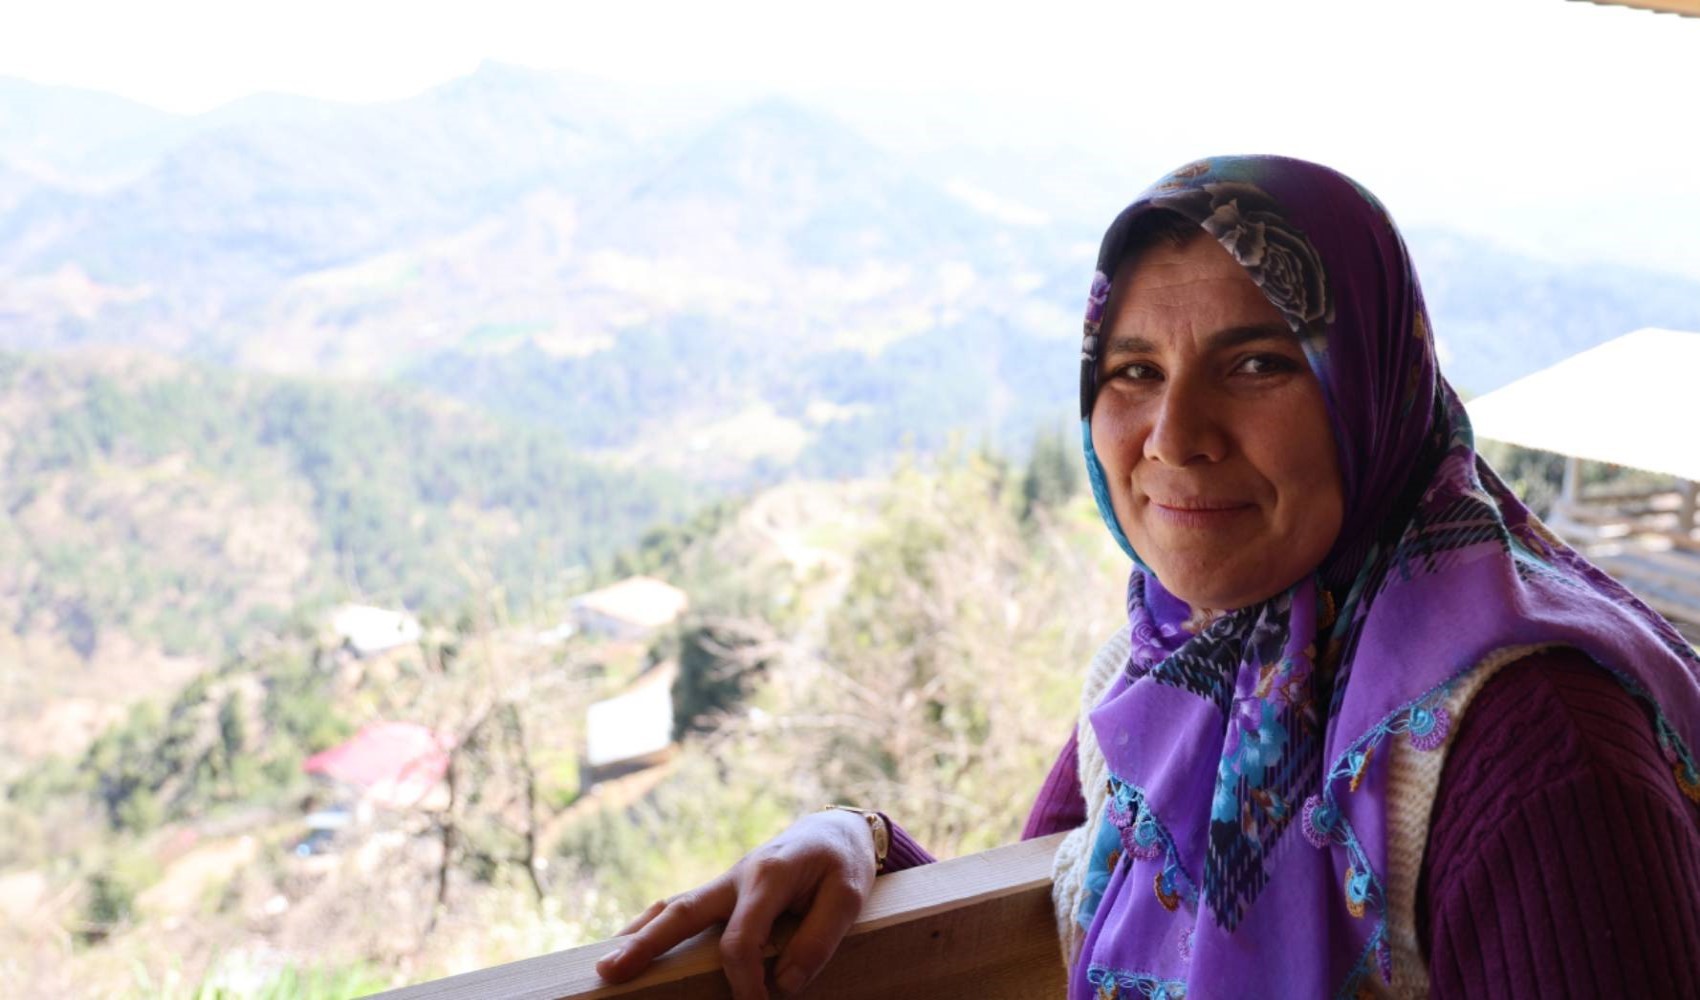 Dürüstlük, yardımlaşma ve huzur vaadetti: Kozan'ın İlk kadın muhtarı seçildi